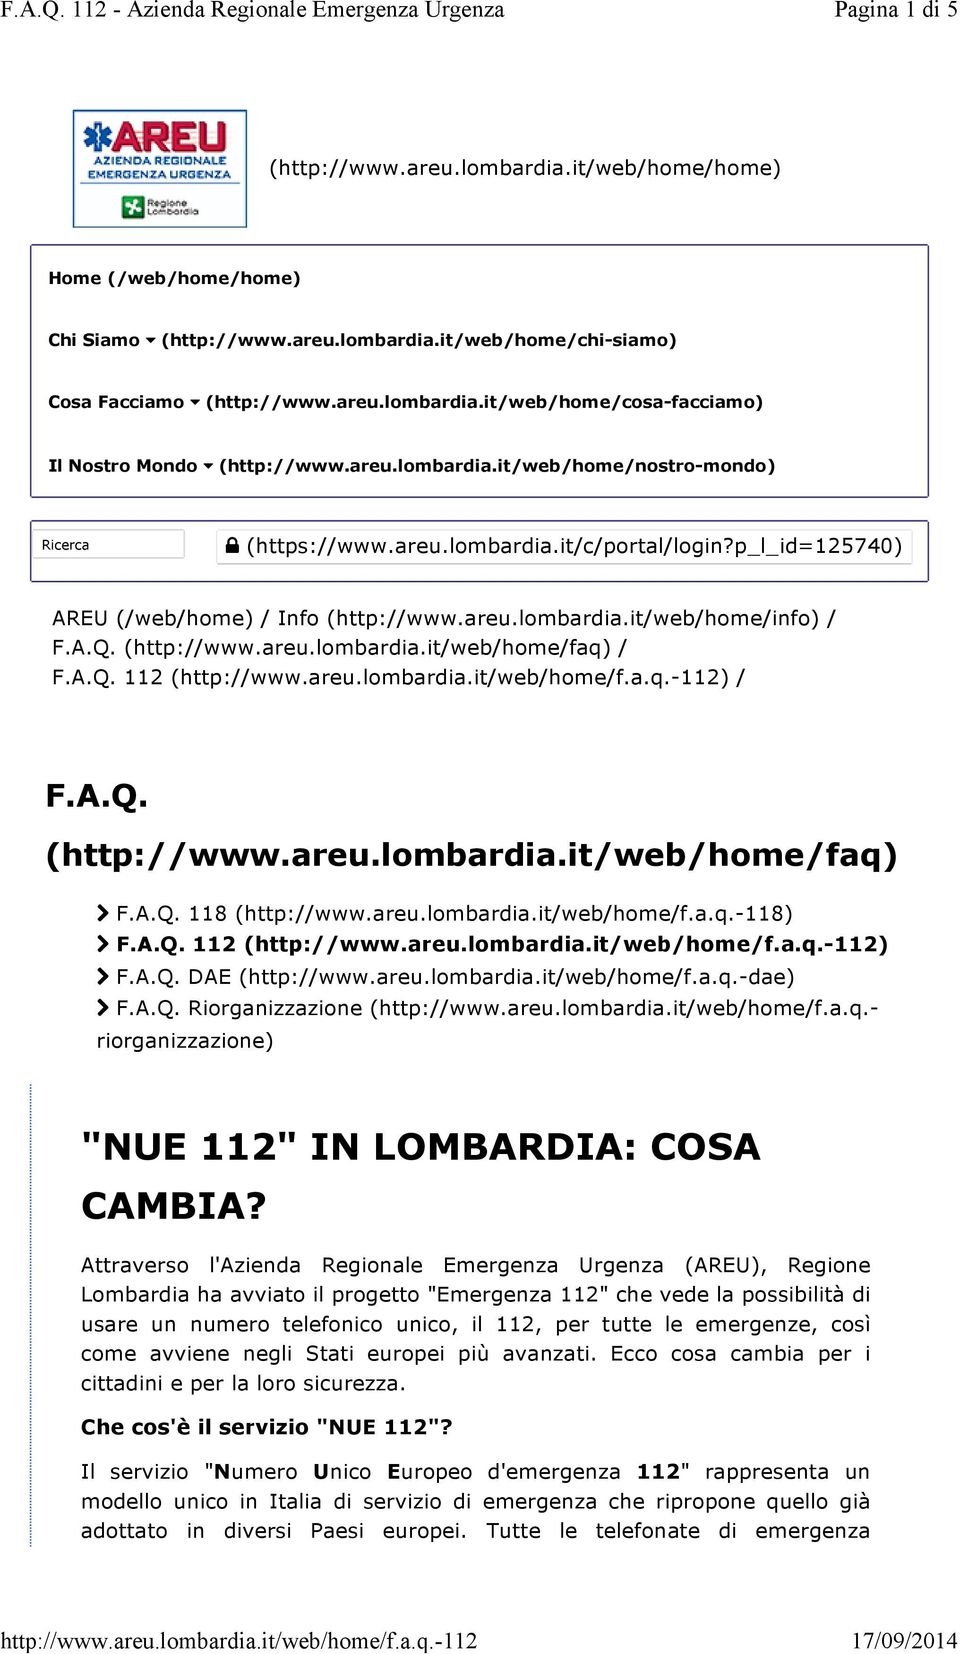 A.Q. 112 () / F.A.Q. (http://www.areu.lombardia.it/web/home/faq) F.A.Q. 118 (http://www.areu.lombardia.it/web/home/f.a.q.-118) F.A.Q. 112 () F.A.Q. DAE (http://www.areu.lombardia.it/web/home/f.a.q.-dae) F.